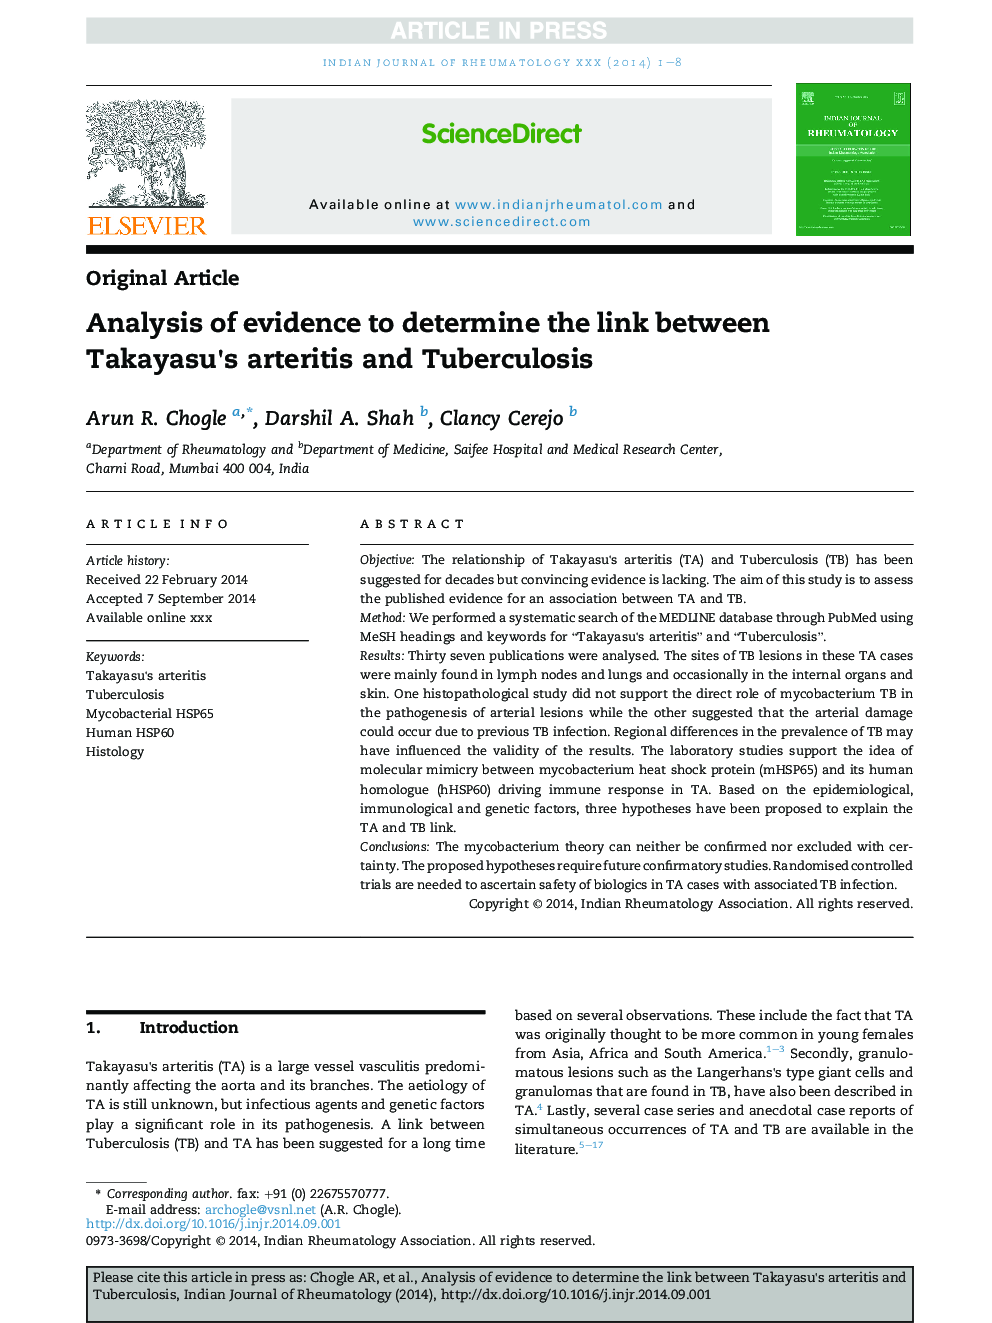 تجزیه و تحلیل شواهد برای تعیین ارتباط بین آرتریت تاکی ساو و سل 